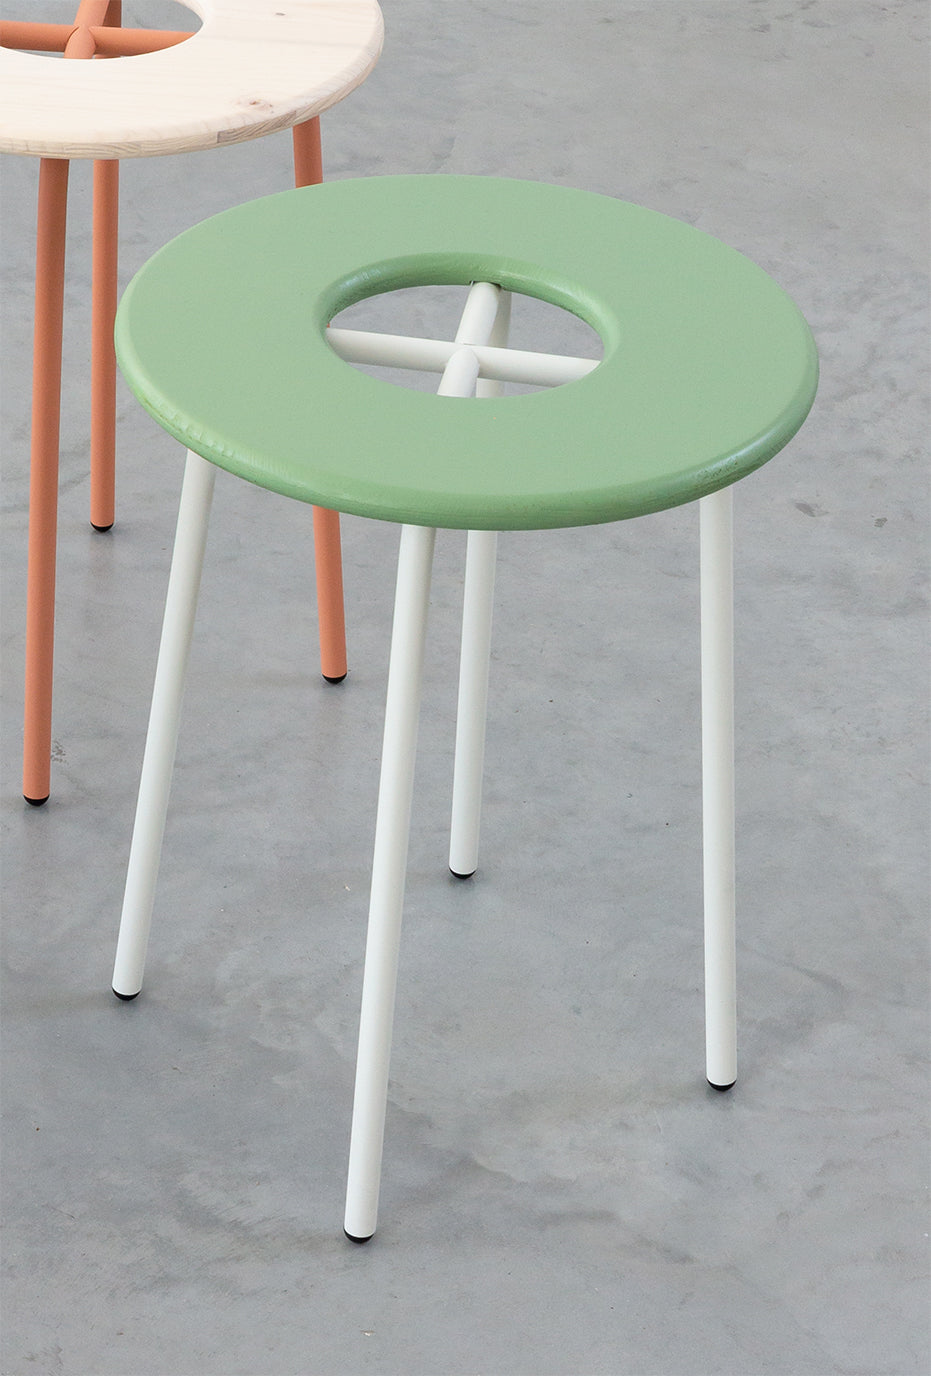 Donut stool